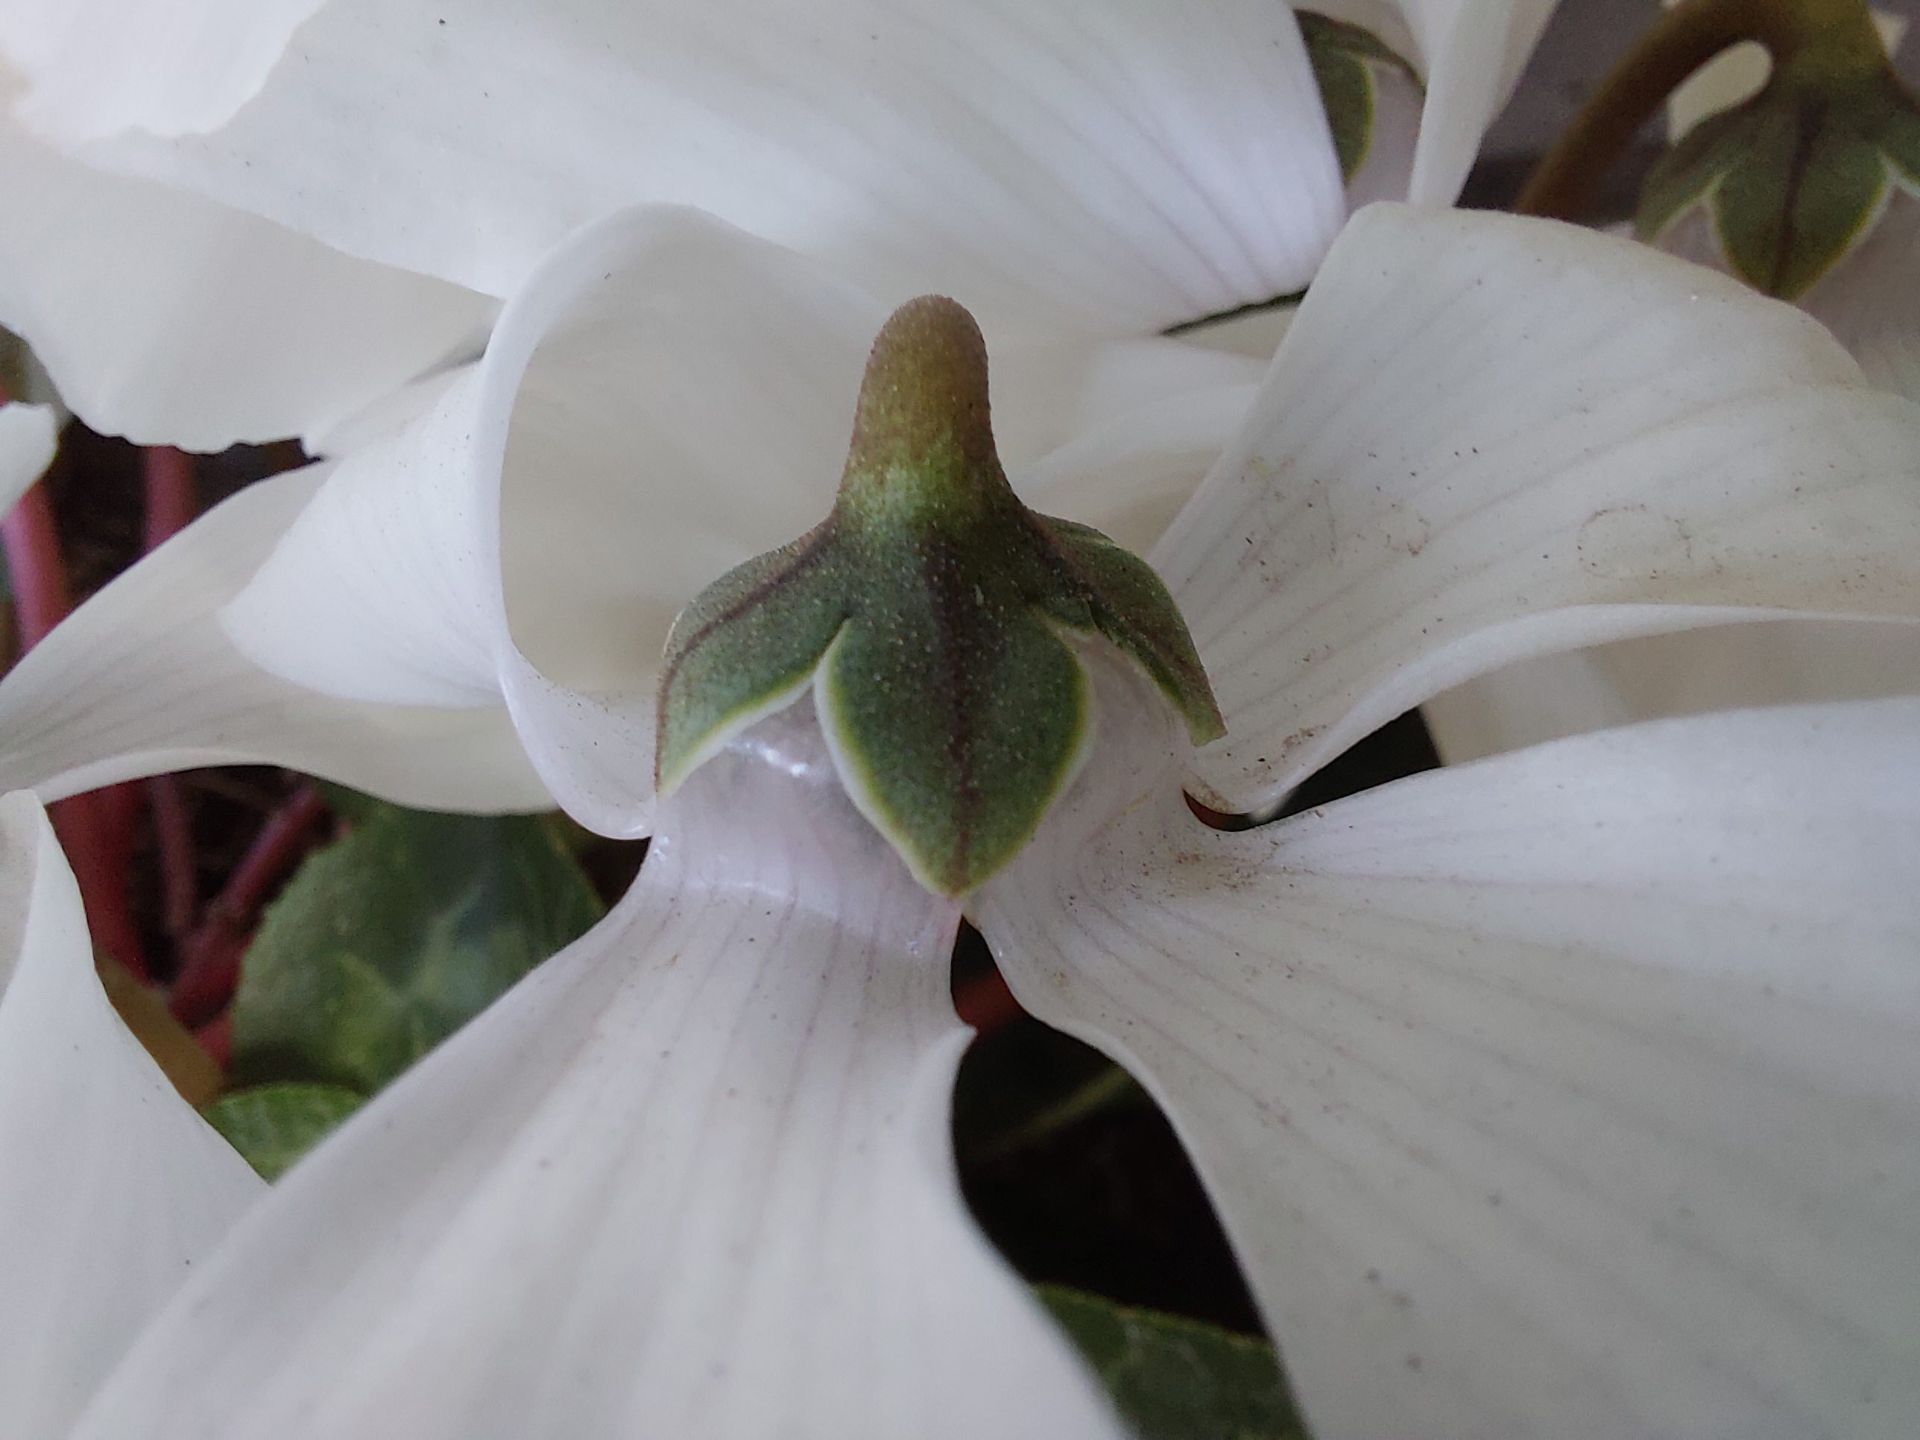 عکس نمونه دوربین ماکرو گلکسی A52 - یک گل سفید از نمای نزدیک